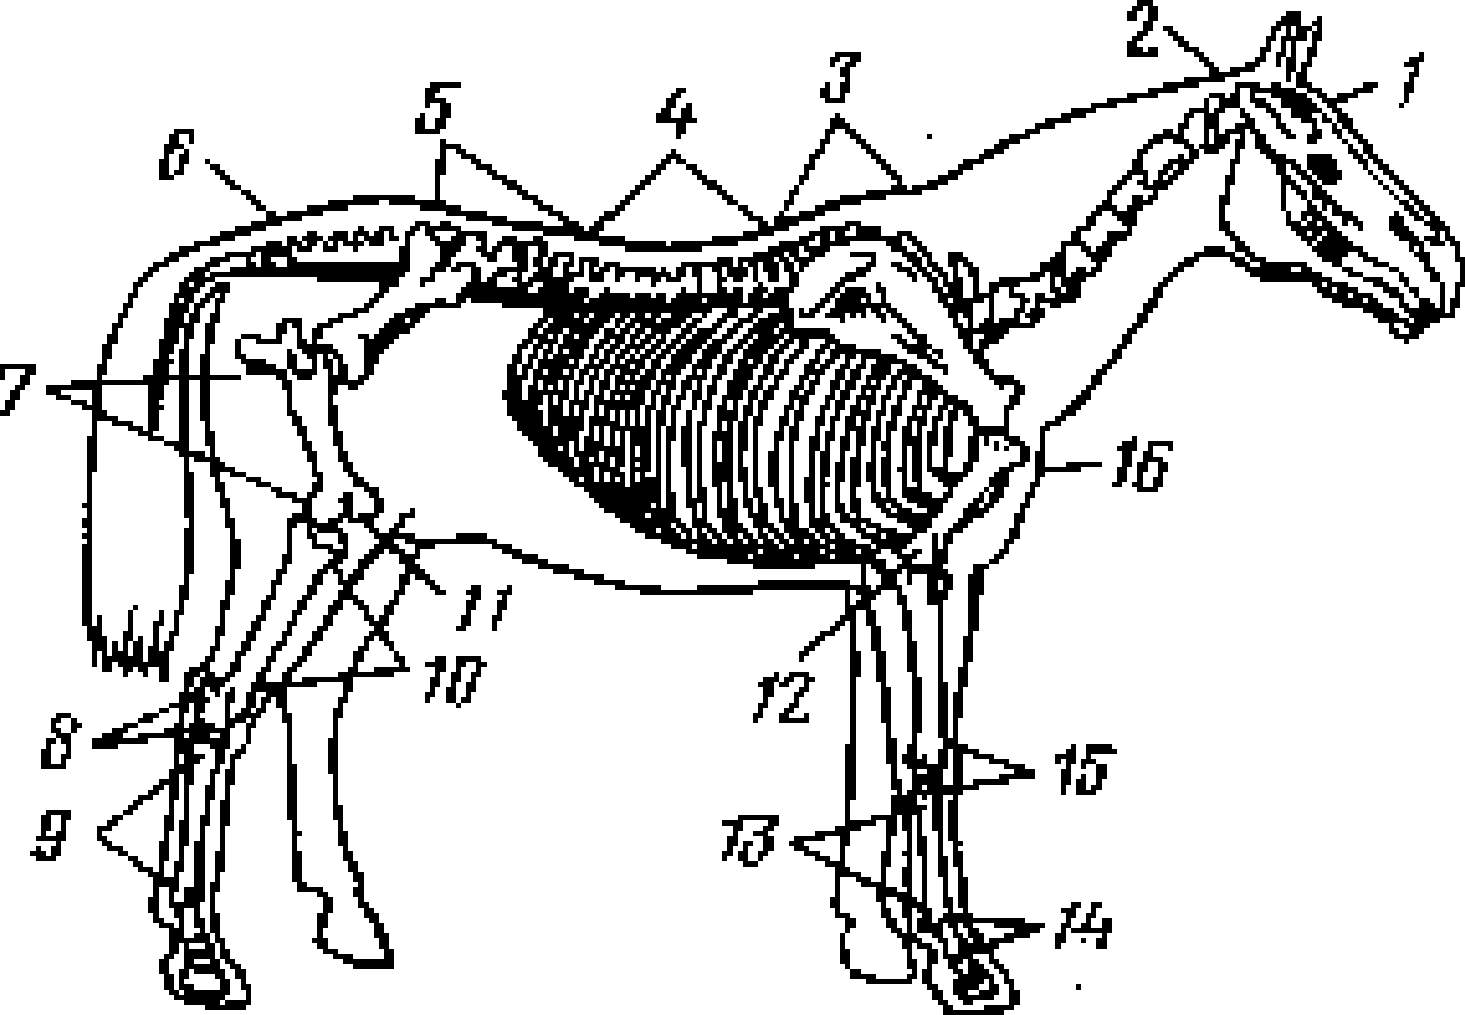 Анатомия лошади — строение скелета, количество костей, череп